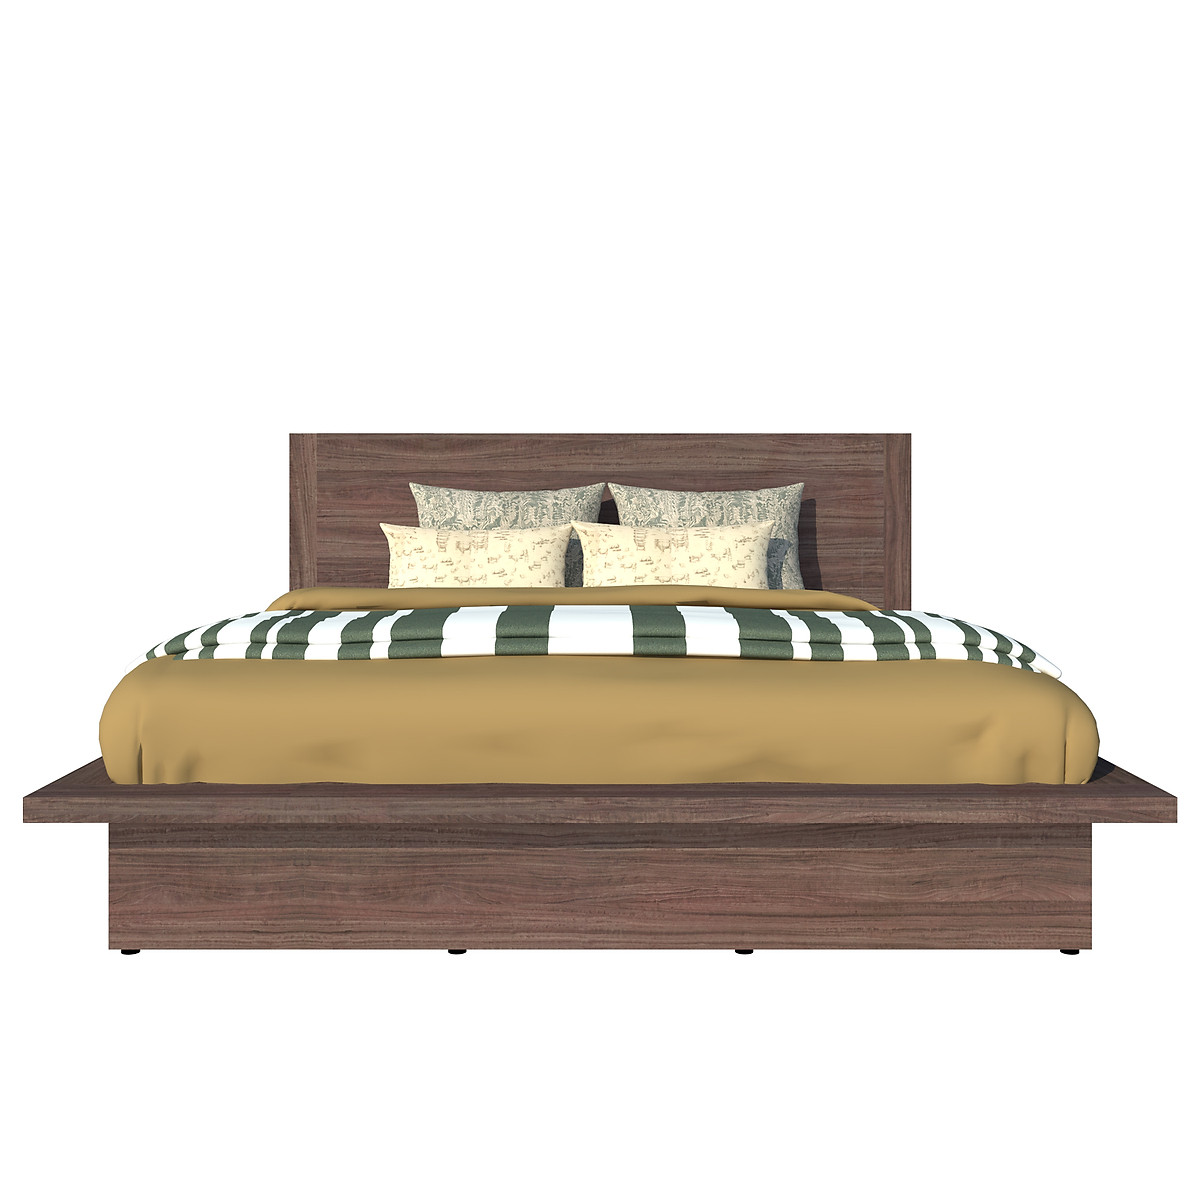 Giường ngủ cao cấp Tundo màu nâu 160cm x 200cm